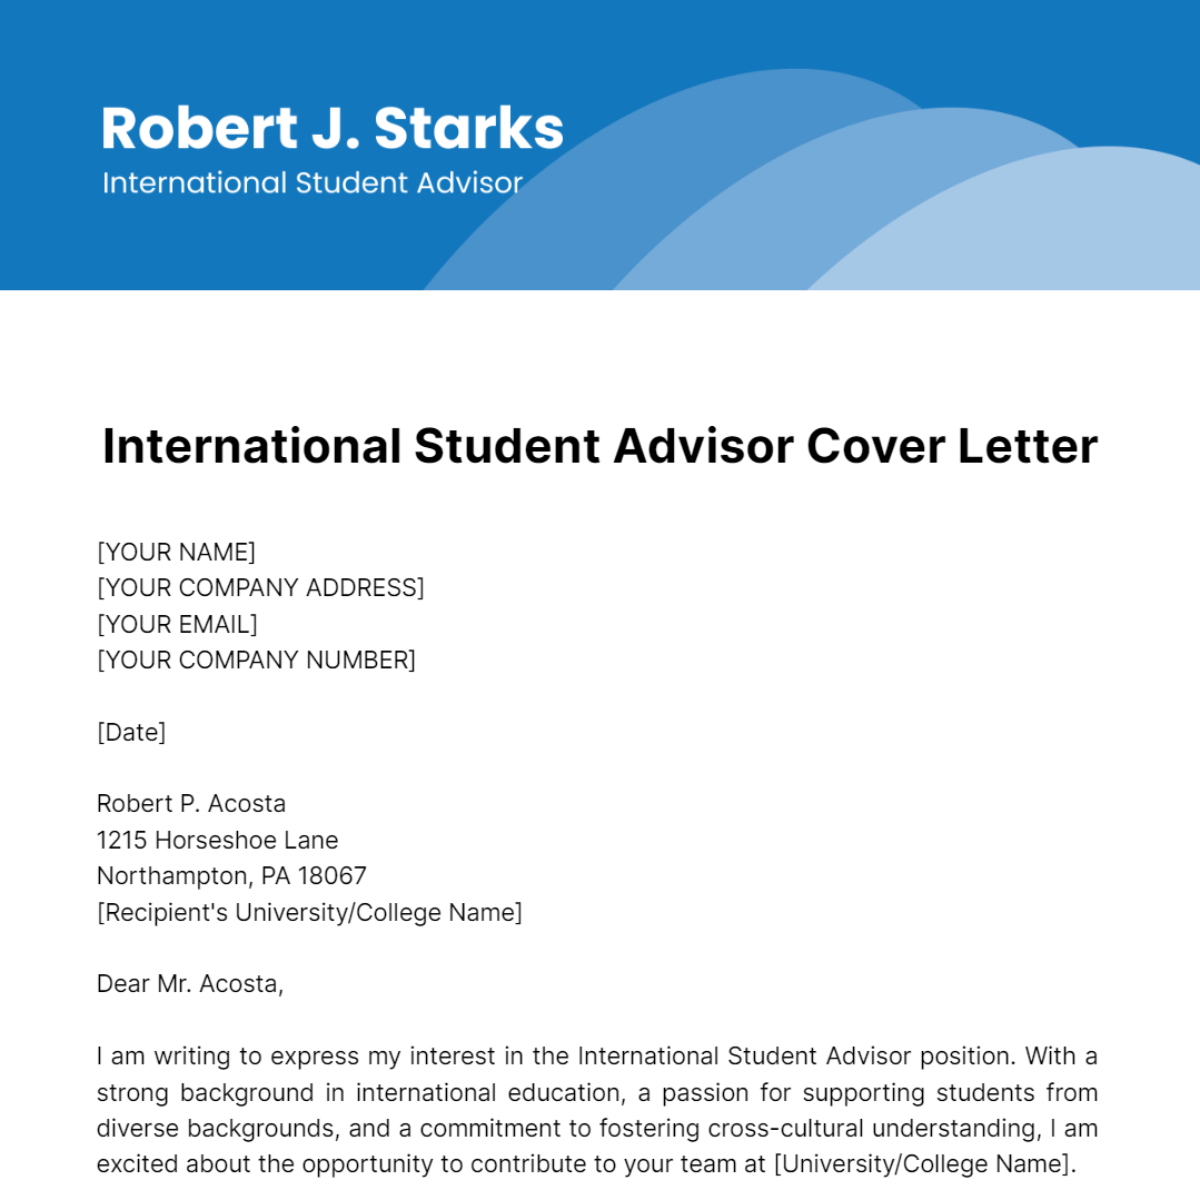 International Student Advisor Cover Letter Template